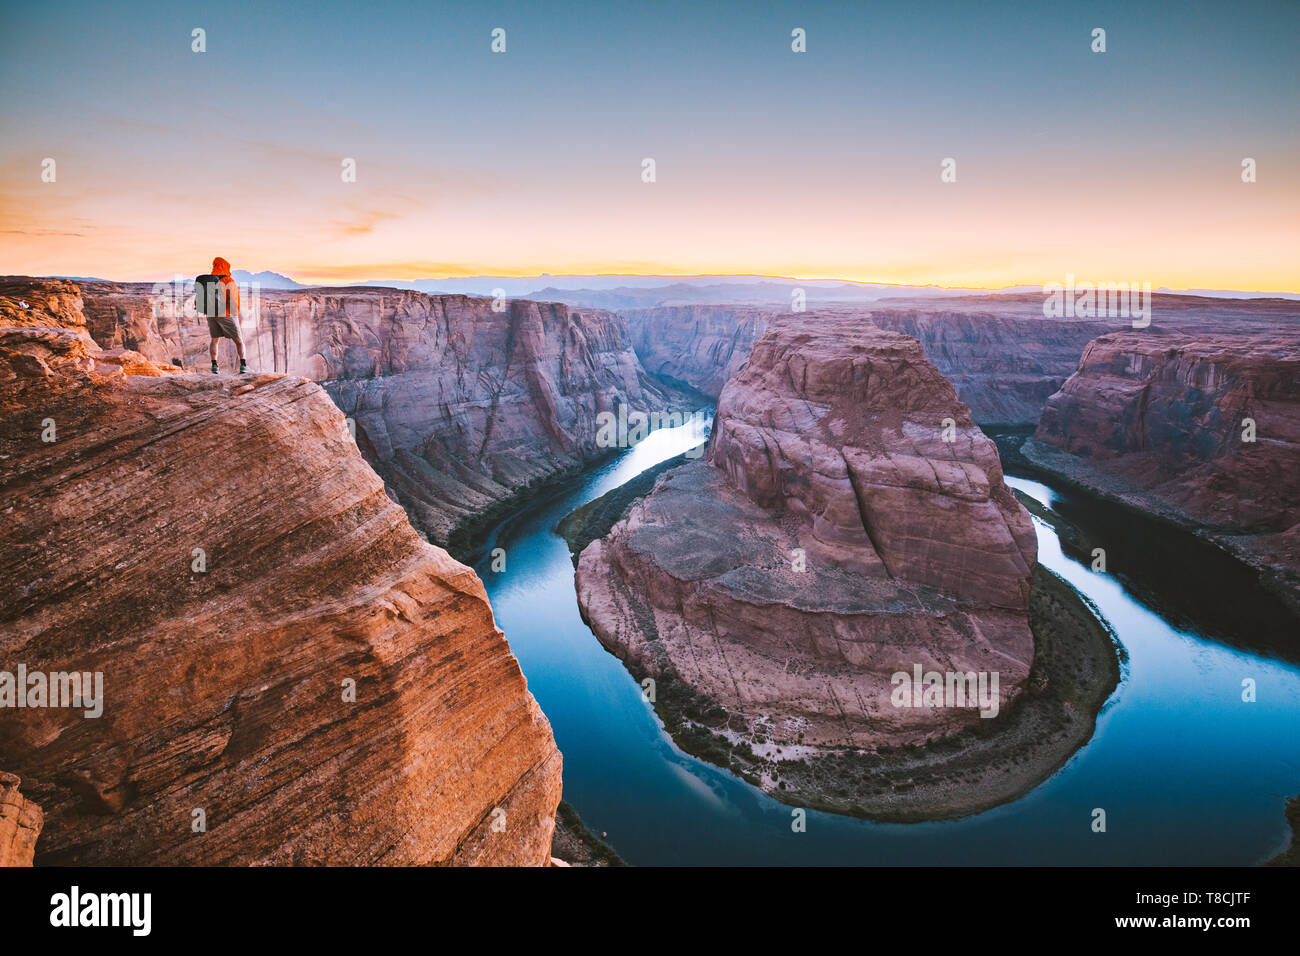 Un maschio di un escursionista è in piedi su ripide scogliere godendo della splendida vista del fiume Colorado che scorre alla famosa curva a ferro di cavallo al tramonto, Arizona, Stati Uniti d'America Foto Stock